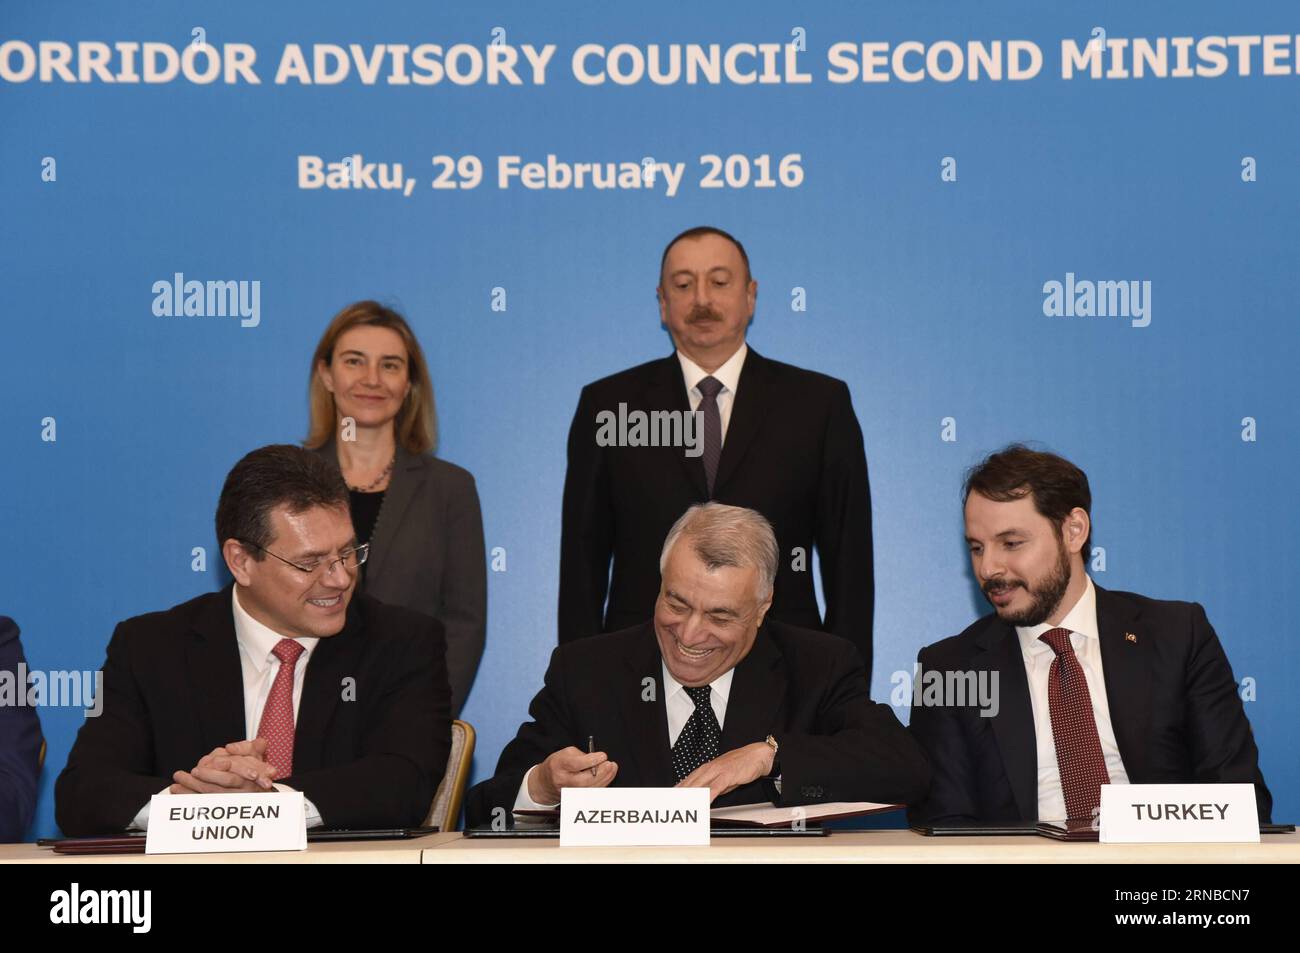 Maros Sefkovic (Front-L), vice-président de la Commission européenne, Natig Aliyev (Front-C), ministre azerbaïdjanais de l'énergie et Berat Albayrak (Front-R), ministre turc de l'énergie et des ressources naturelles, participent à la deuxième réunion du Conseil consultatif du corridor gazier Sud à Bakou, Azerbaïdjan, le 29 février 2016. Les pays du Corridor gazier Sud (CGS) se sont engagés lundi à poursuivre leur coopération pour assurer un approvisionnement fiable et cohérent en gaz de l’Azerbaïdjan vers les marchés européens. La déclaration conjointe a été faite après la réunion de soutien du Conseil consultatif du CGS, à laquelle ont assisté 12 ministres du cgs pa Banque D'Images